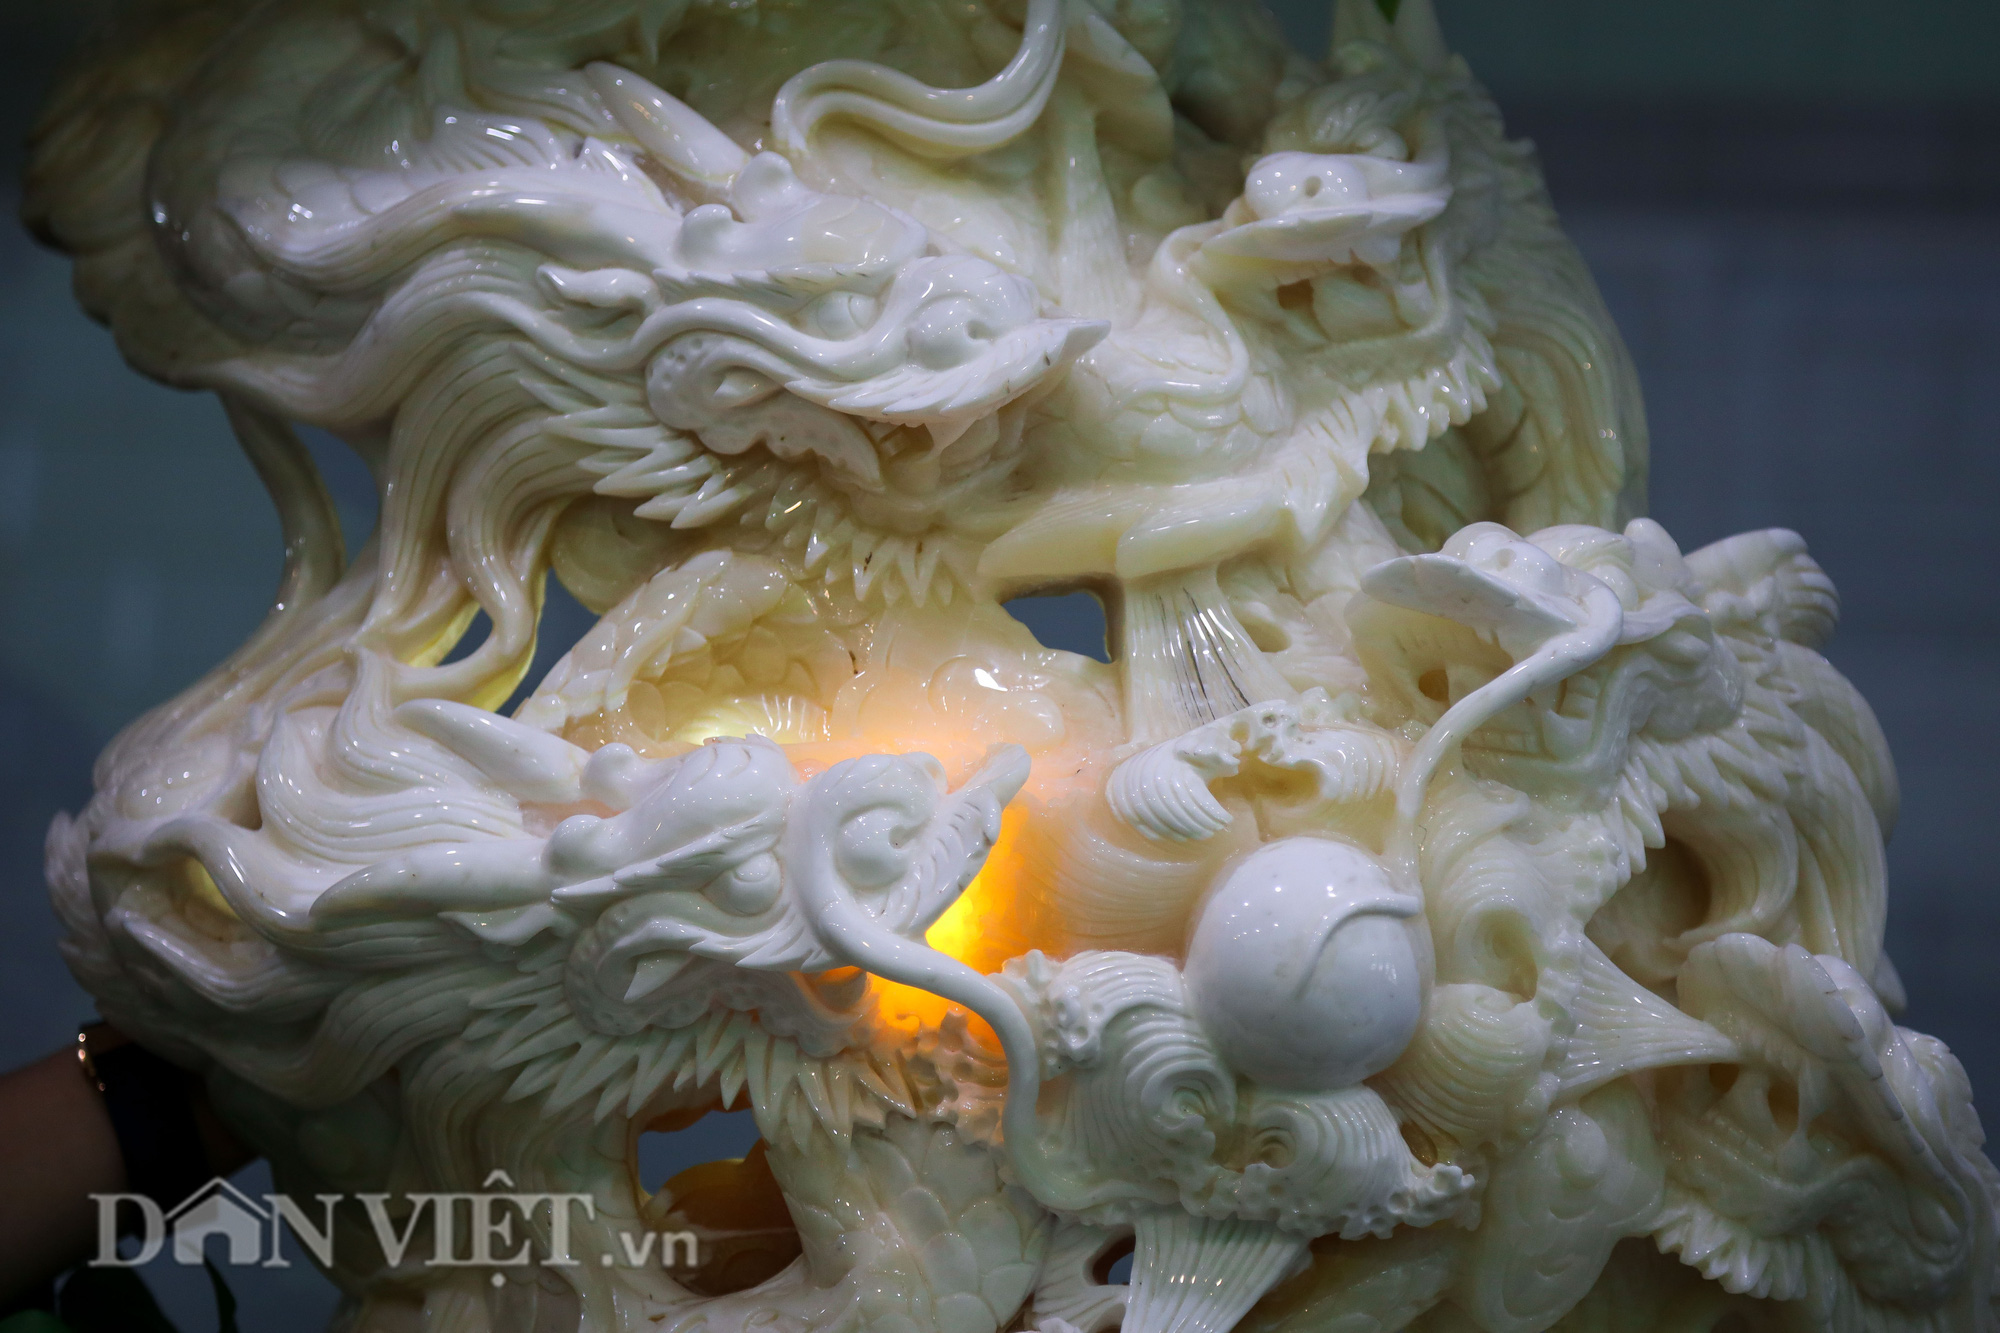 Cận cảnh Cửu Long Tranh Châu chạm khắc trên vỏ sò khổng lồ 1000 tuổi - Ảnh 3.